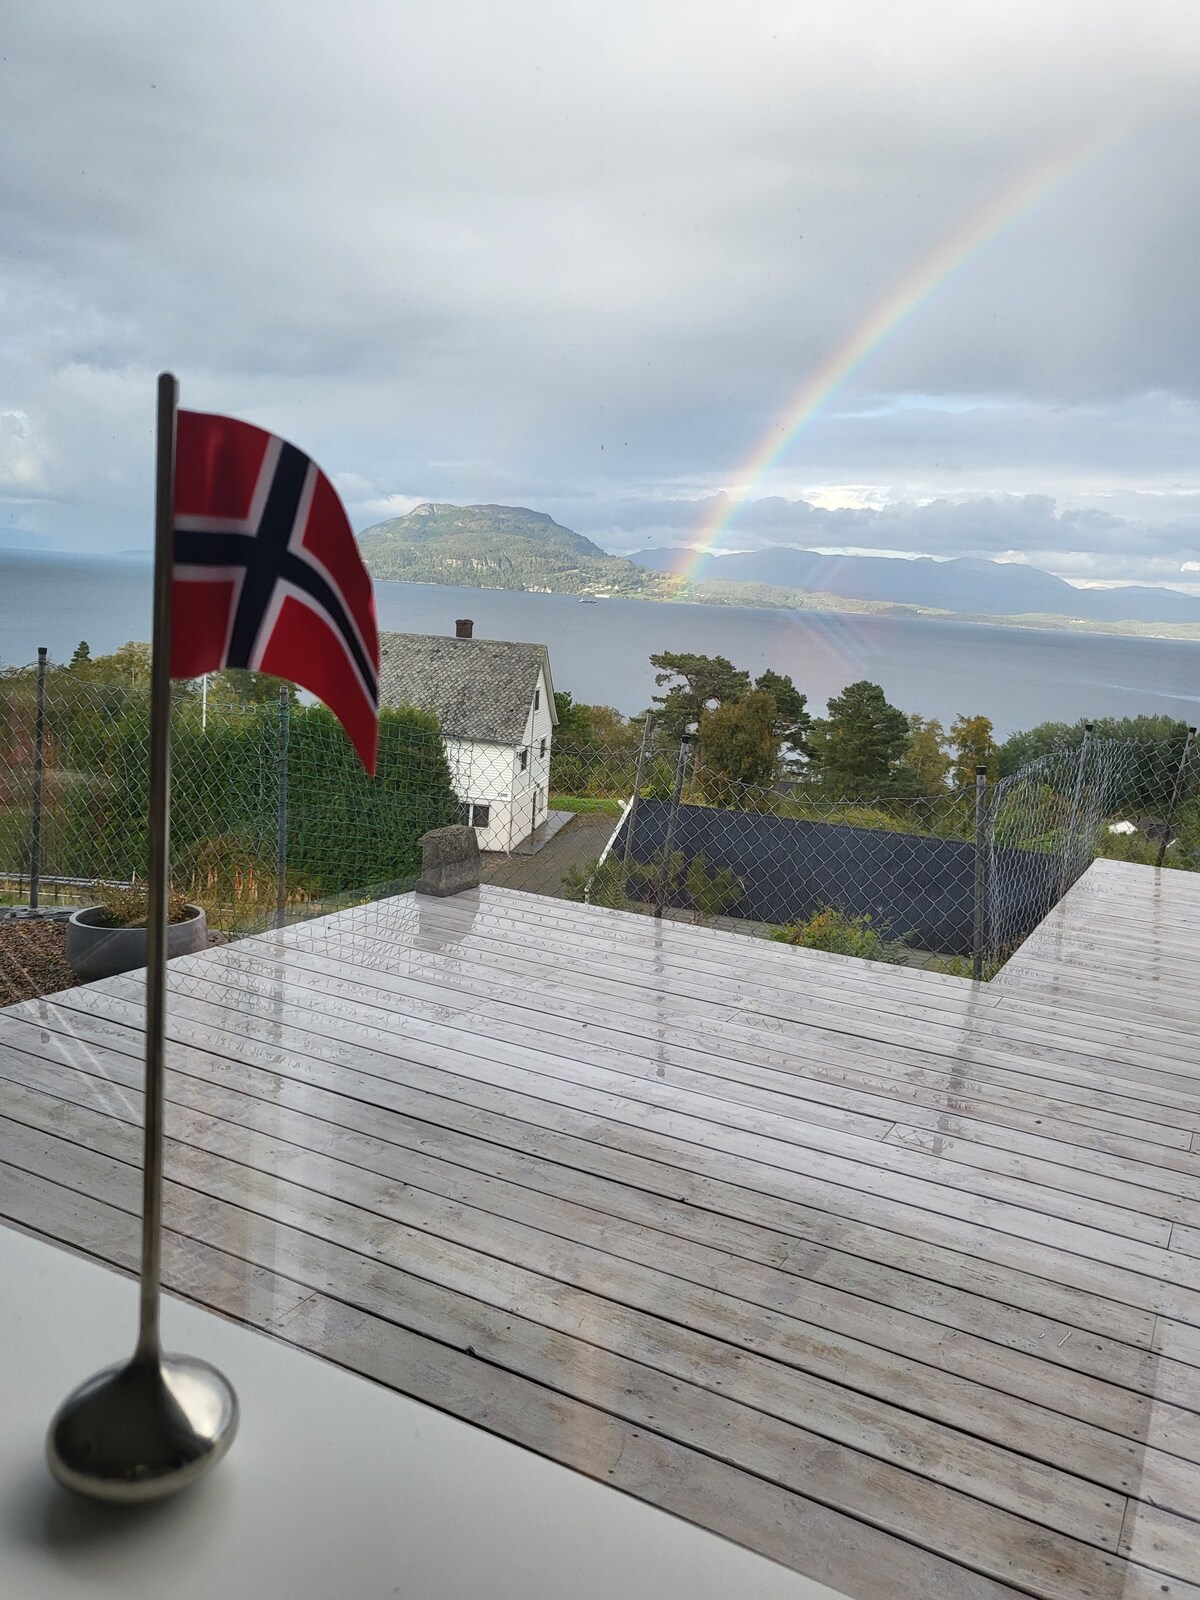 Bjoa i Vindafjord